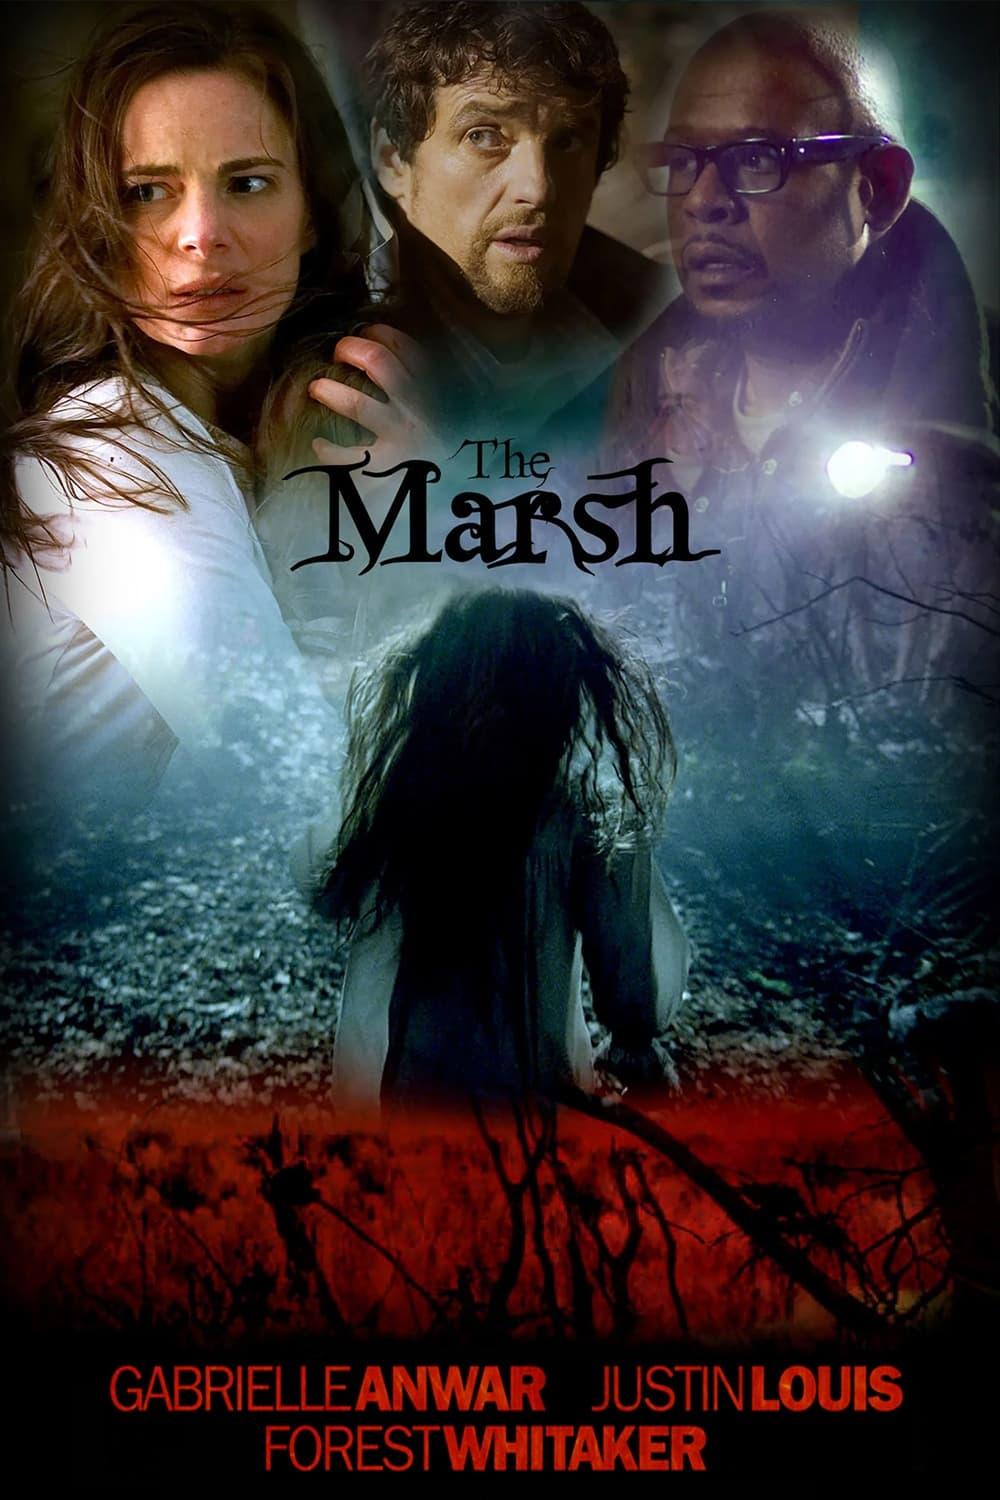 The Marsh poster